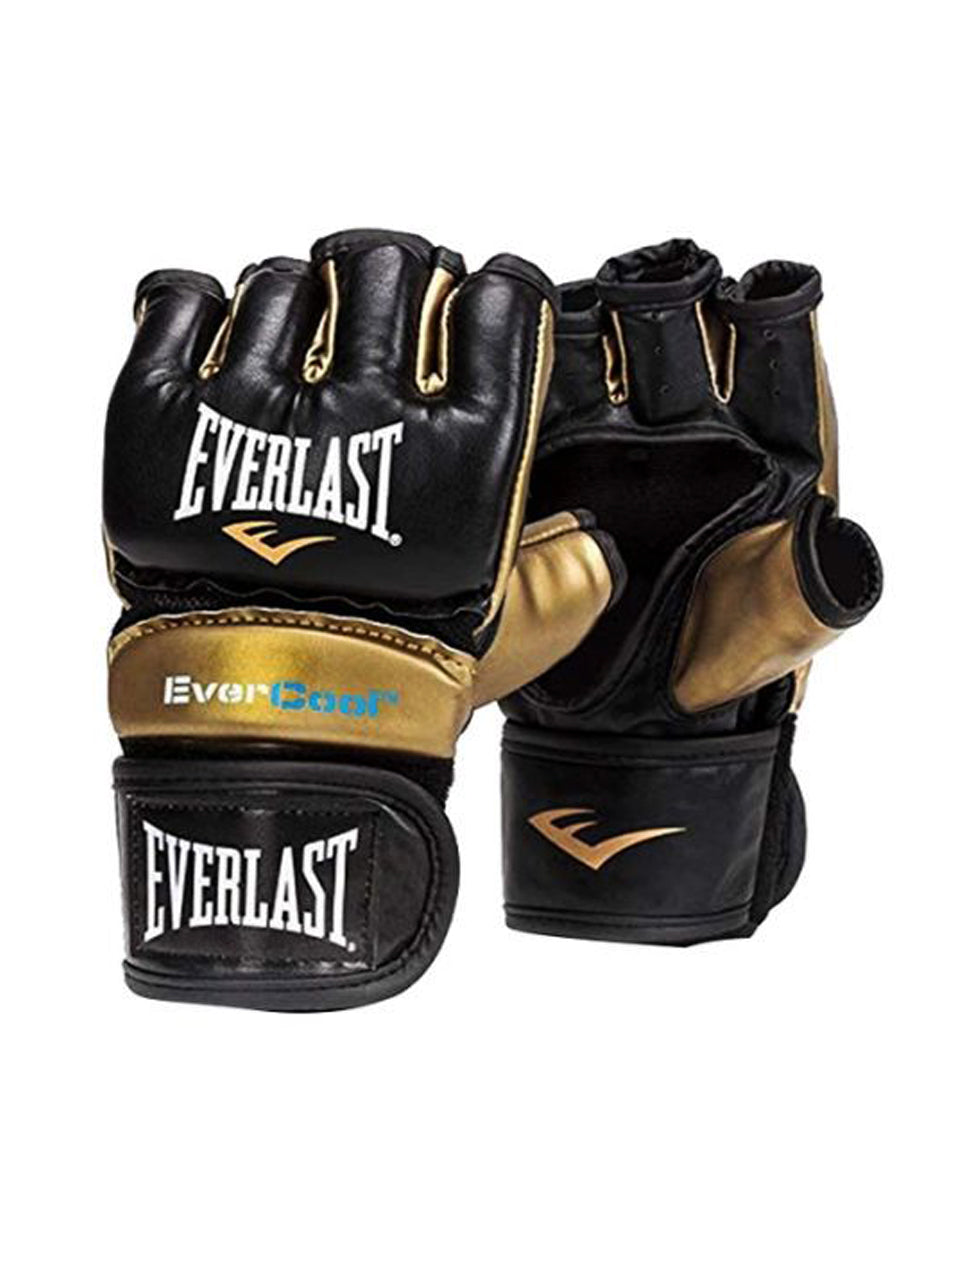 Everlast Everstrike Training Gloves for Men - Large